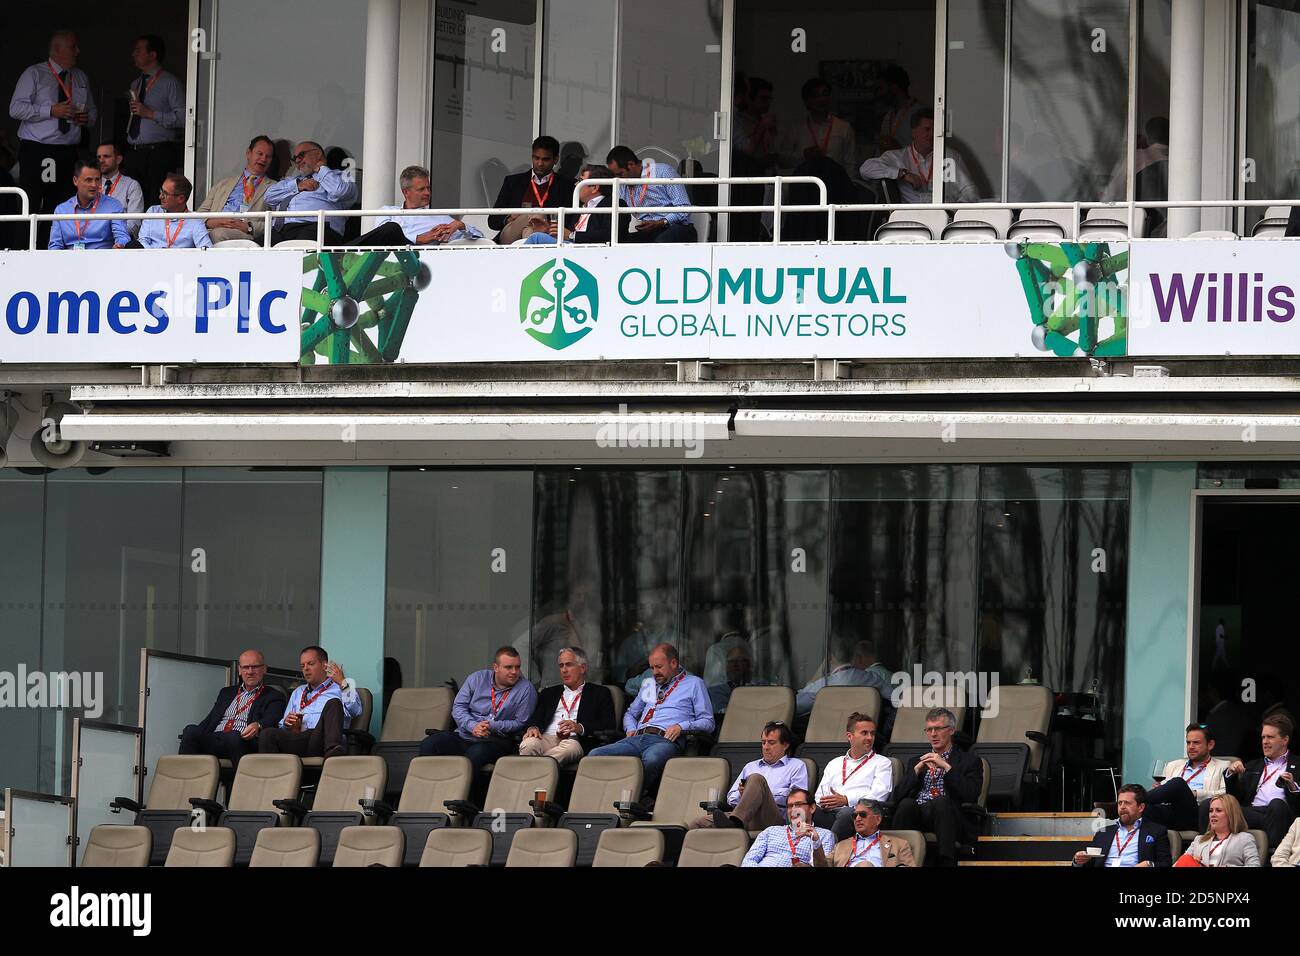 Les fans de cricket regardent l'action au Kia Oval Banque D'Images